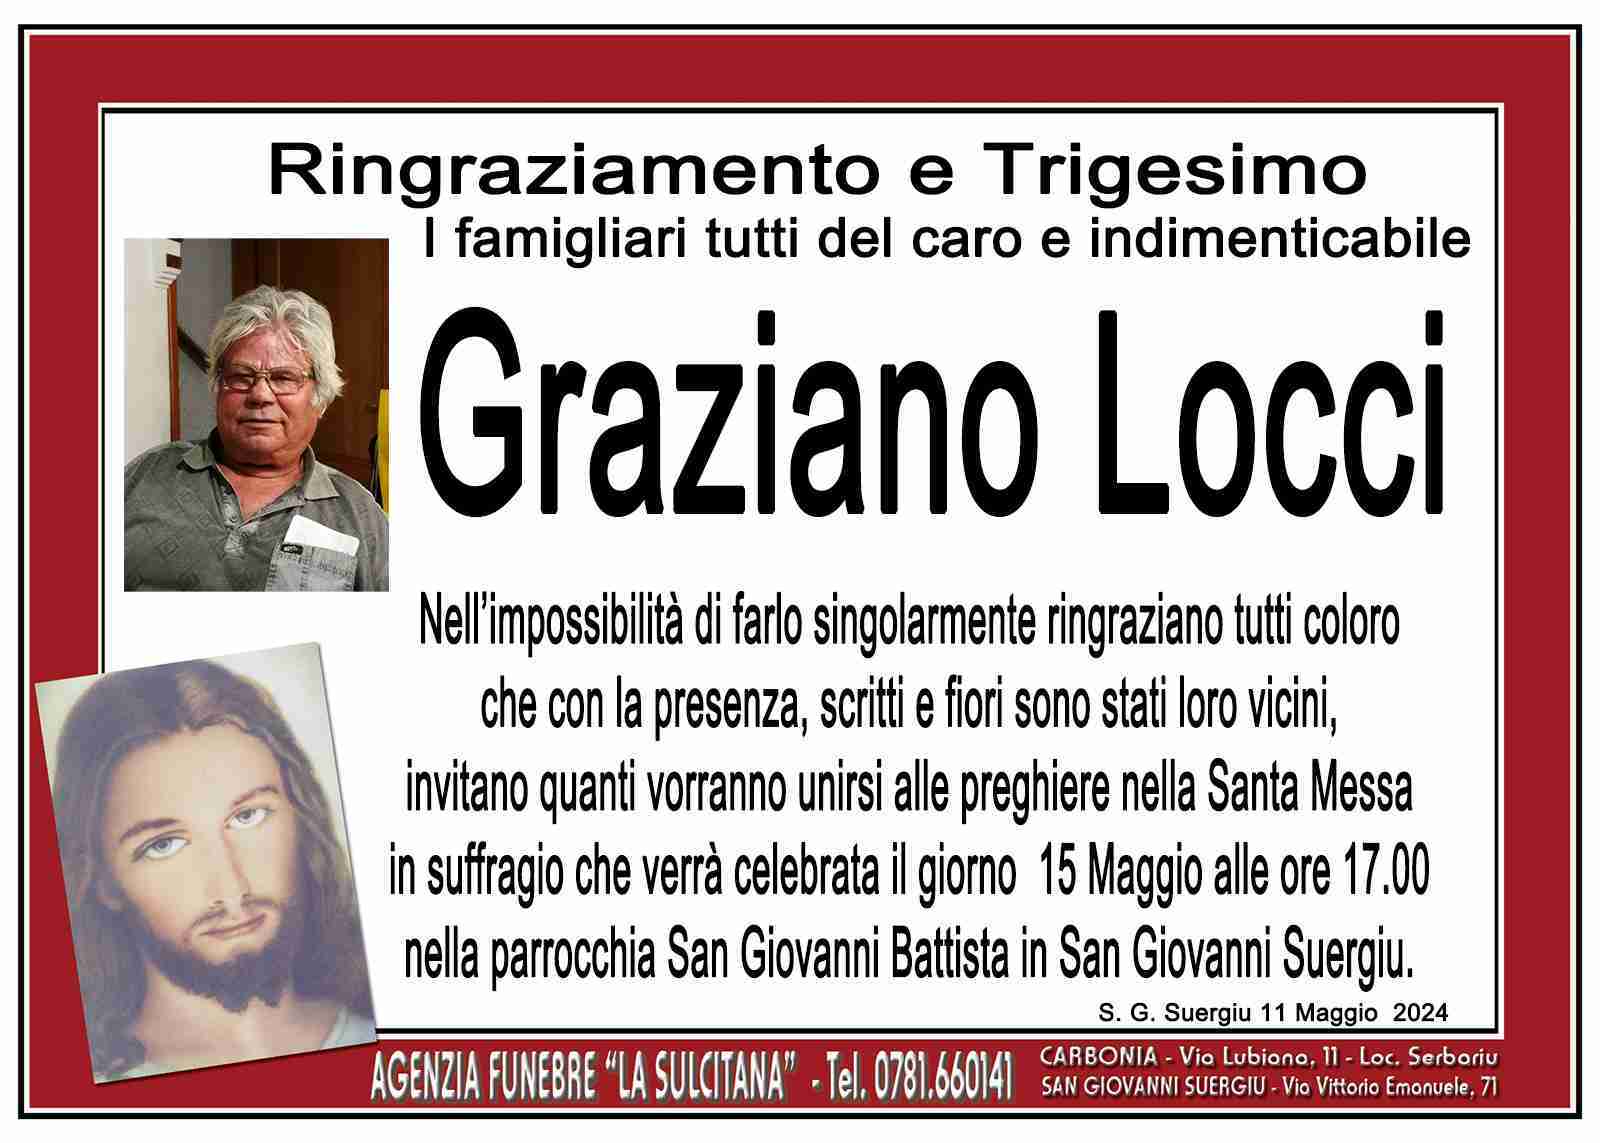 Graziano Locci